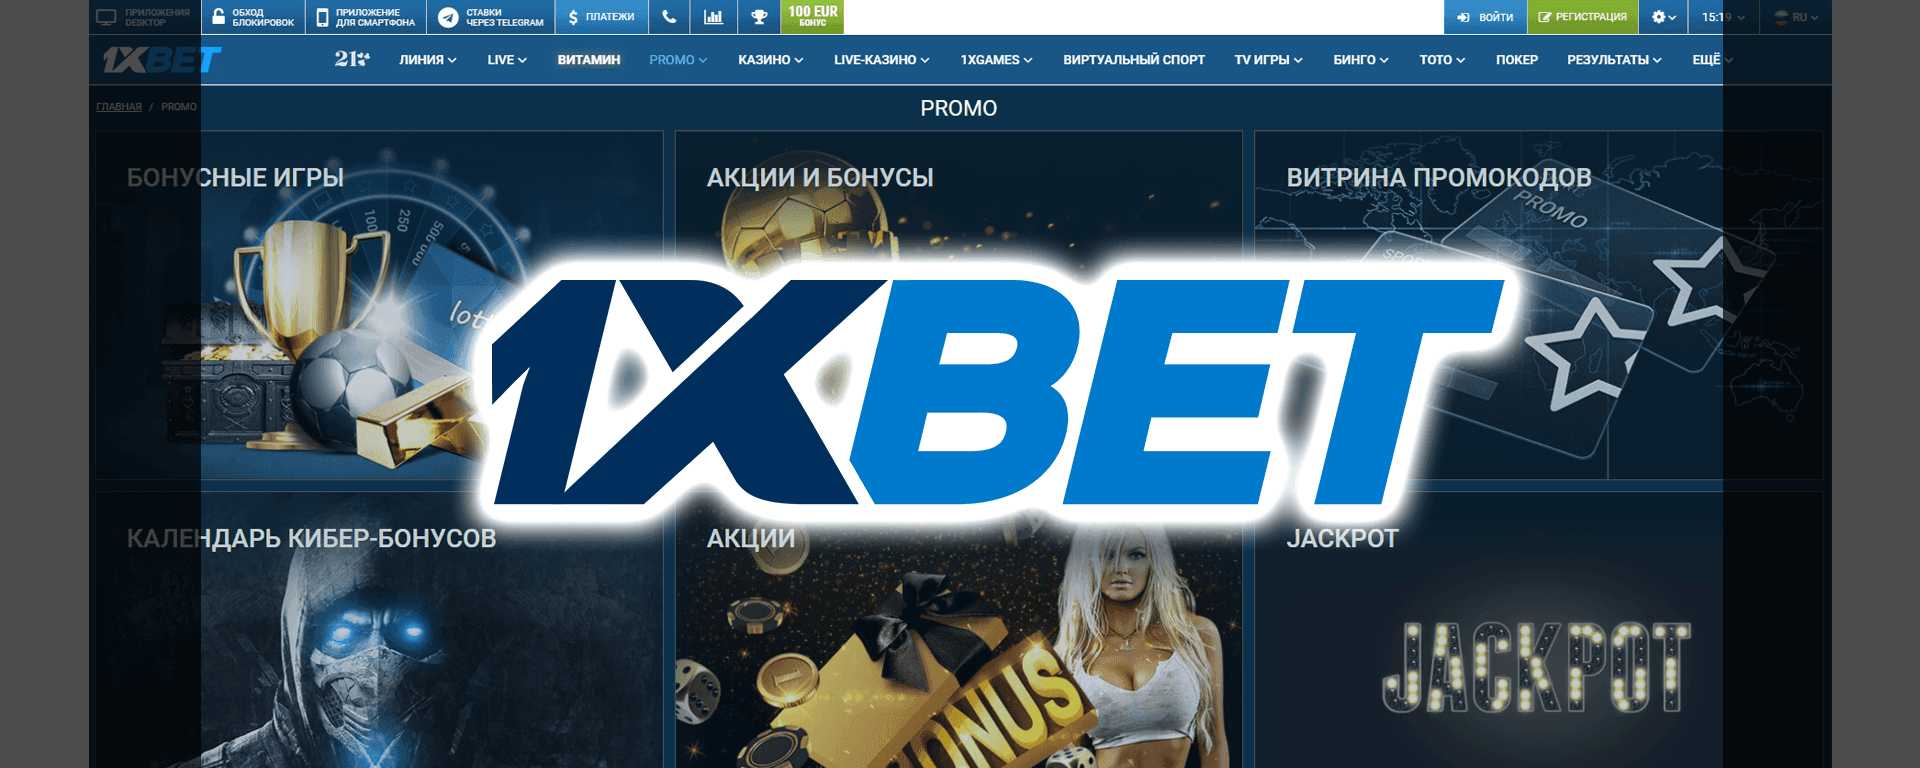 1 xbet официальный сайт казино